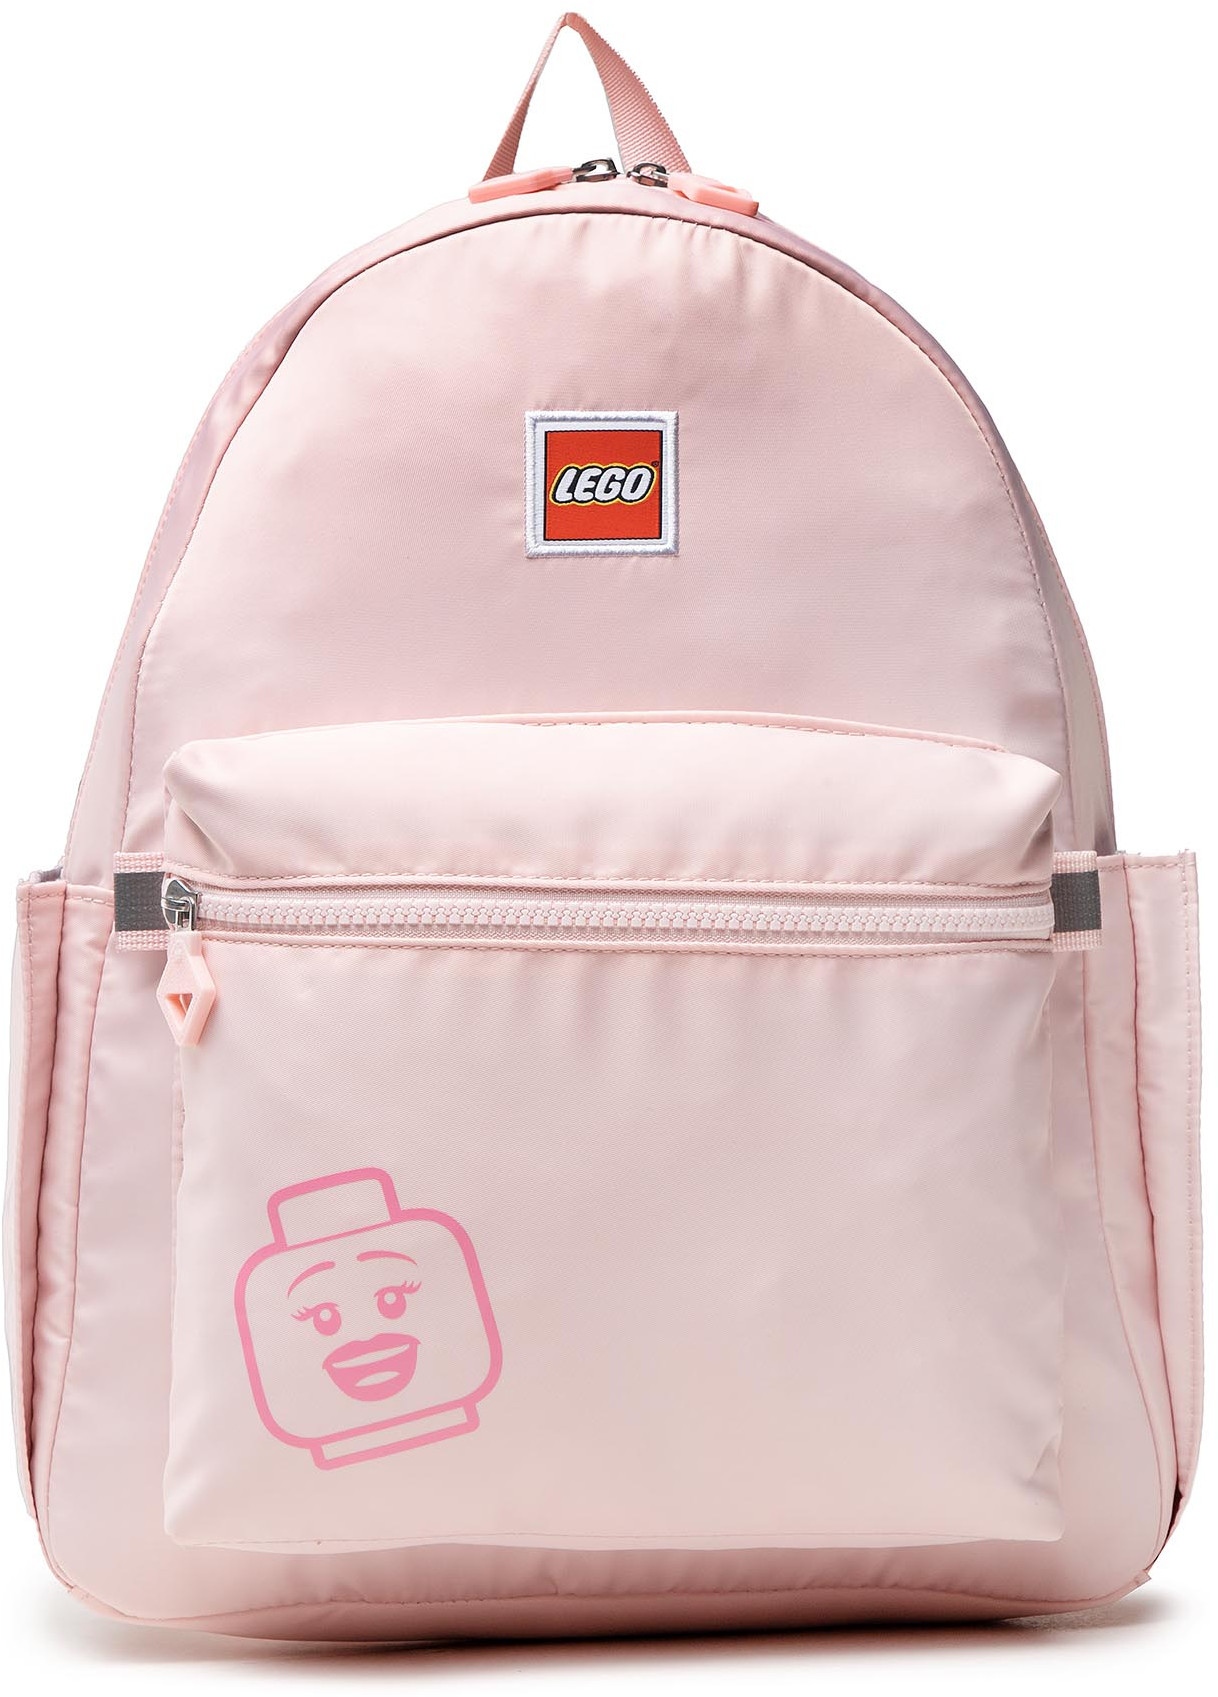 Plecak LEGO - Tribini Joy Backpack Large 20130-1935 Lego Emoji/Pastel Pink